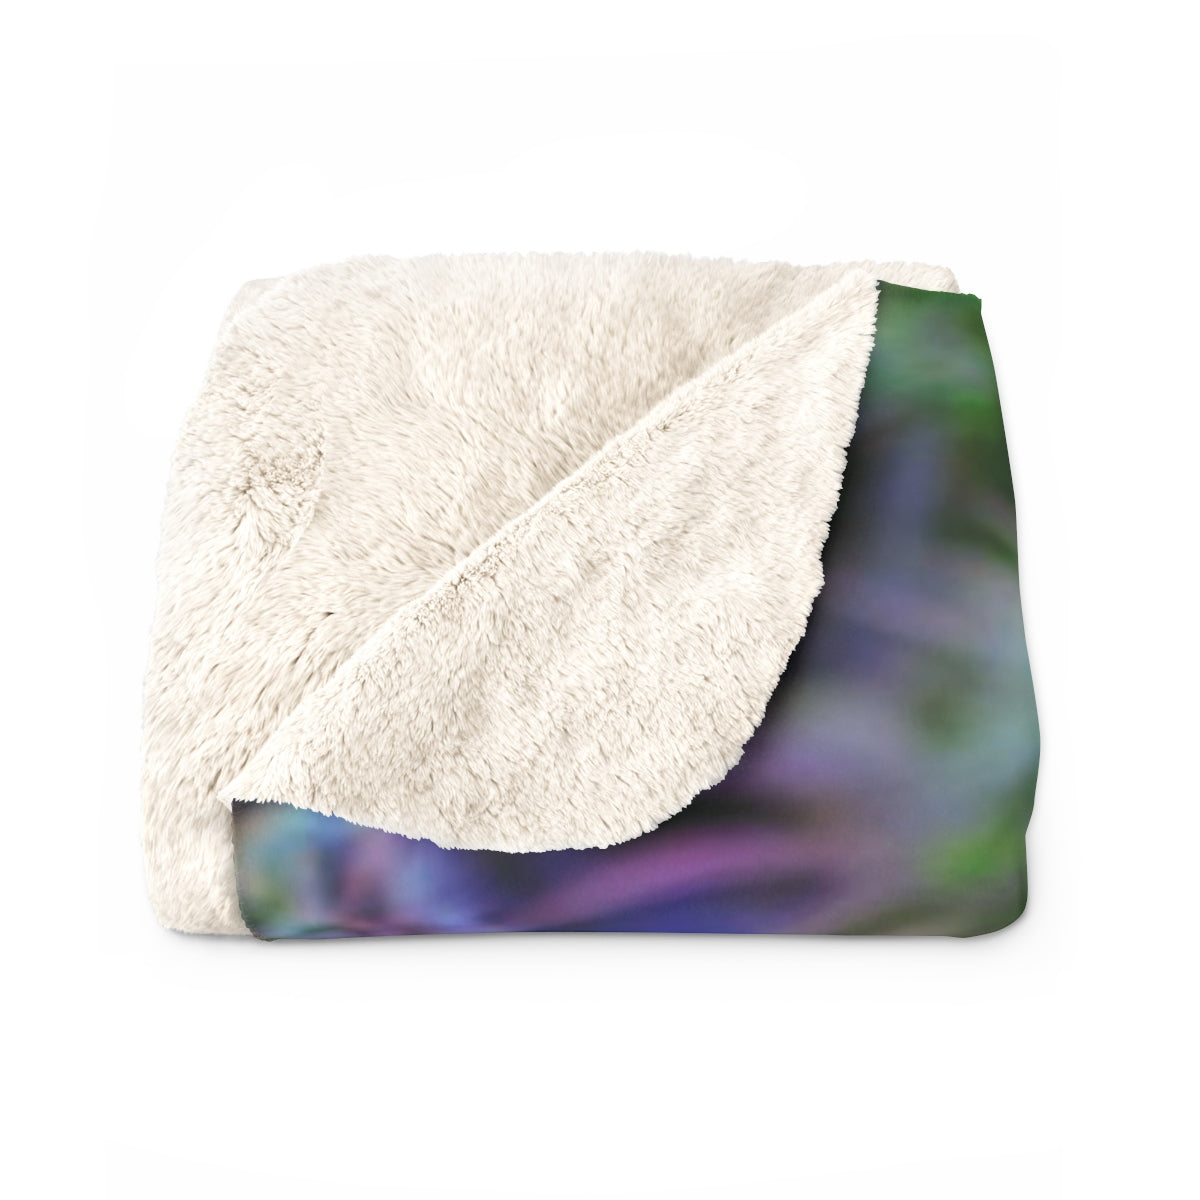 The Purple Cannabis Sherpa Fleece Blanket